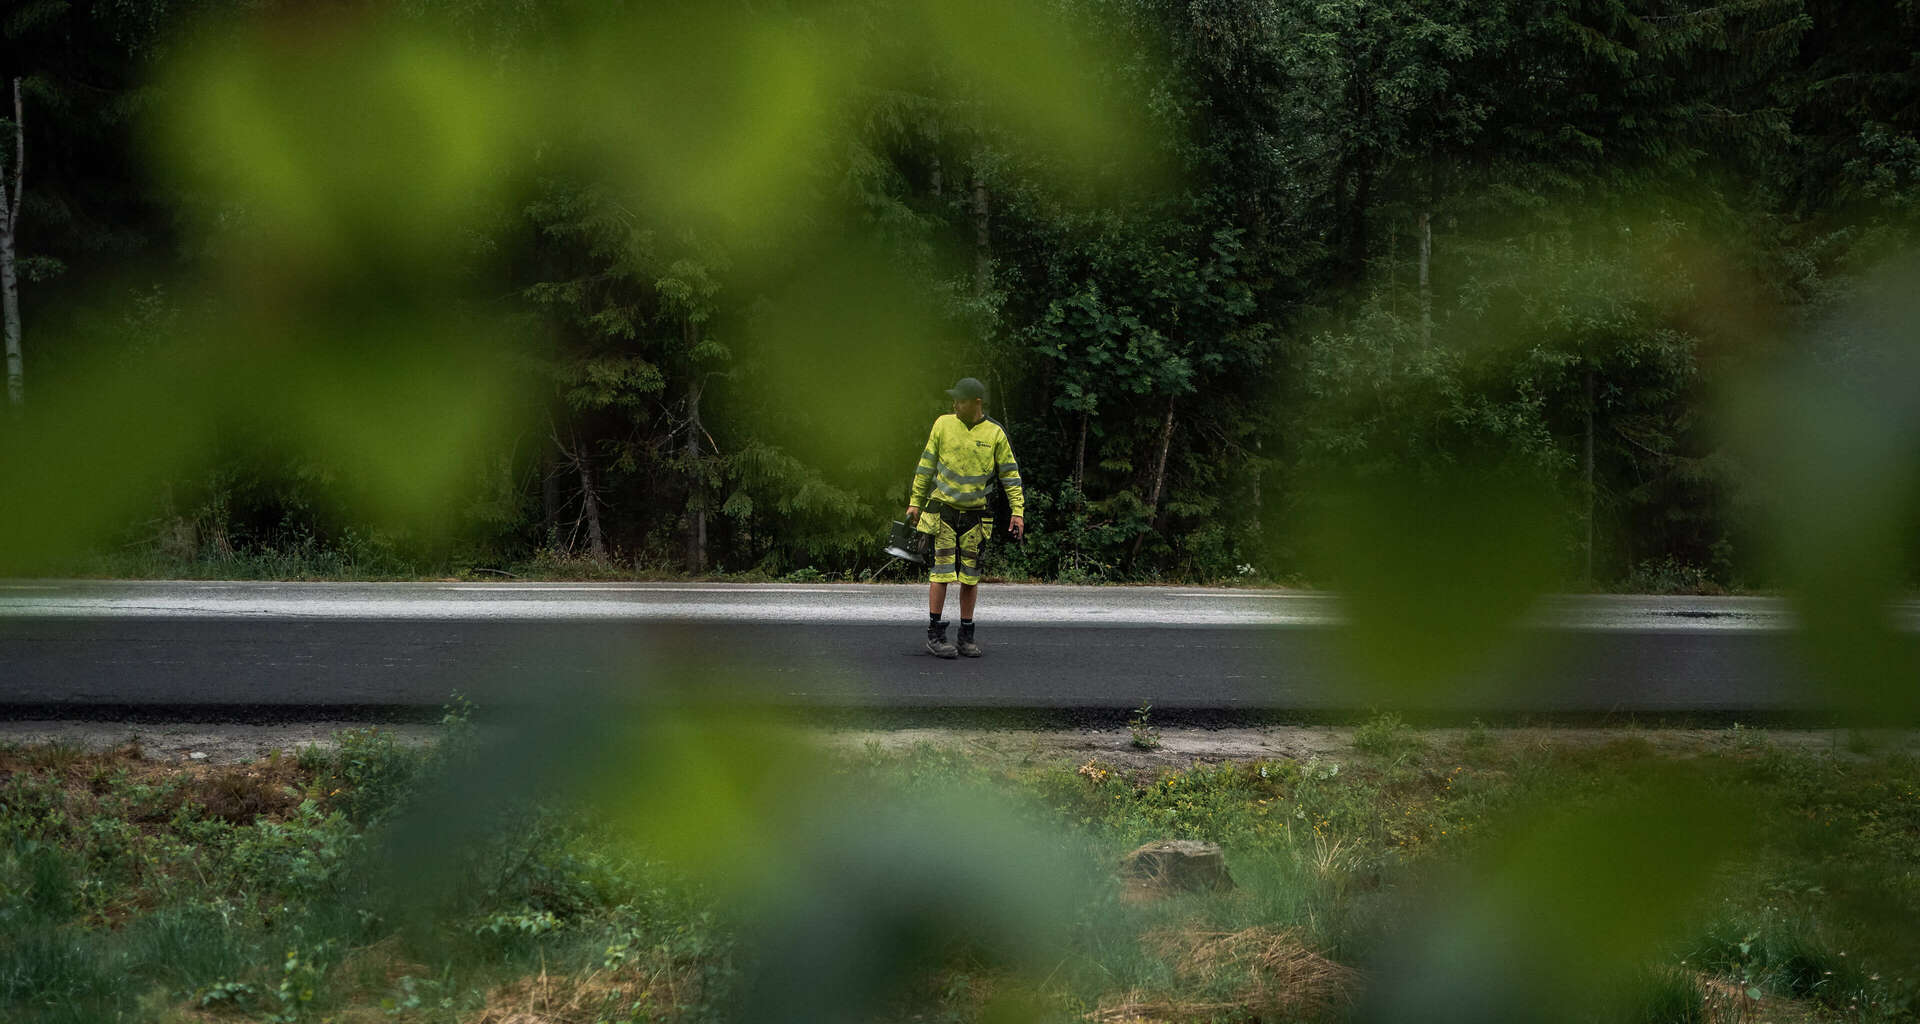 Ansatt hos Brani som står med måleinstrument på nyasfaltert vei midt i skogen. Foto